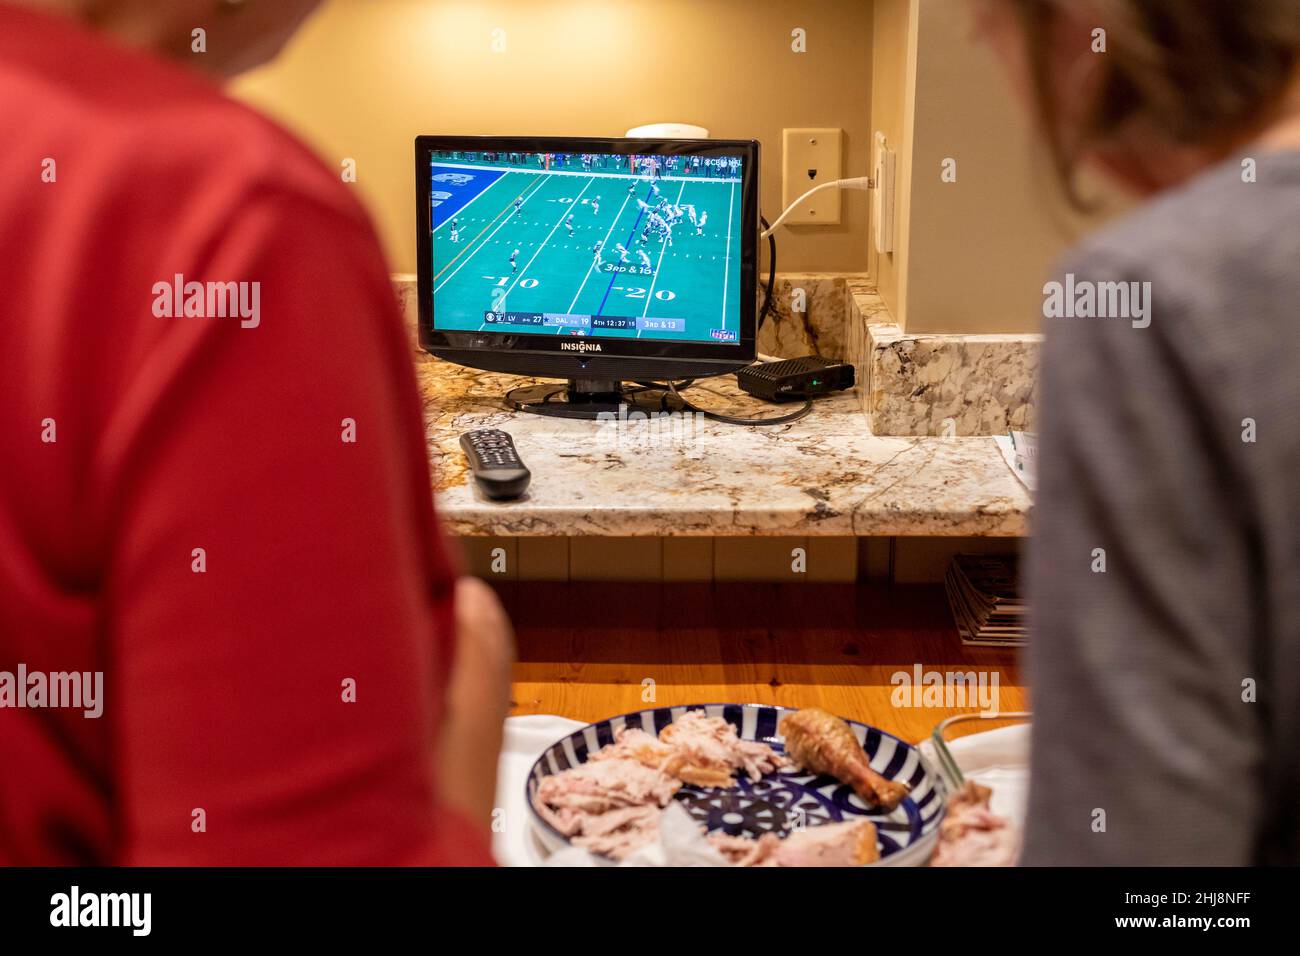 Zwei Personen schauen Fußball im Fernsehen, während sie das Thanksgiving-Abendessen vorbereiten. Stockfoto